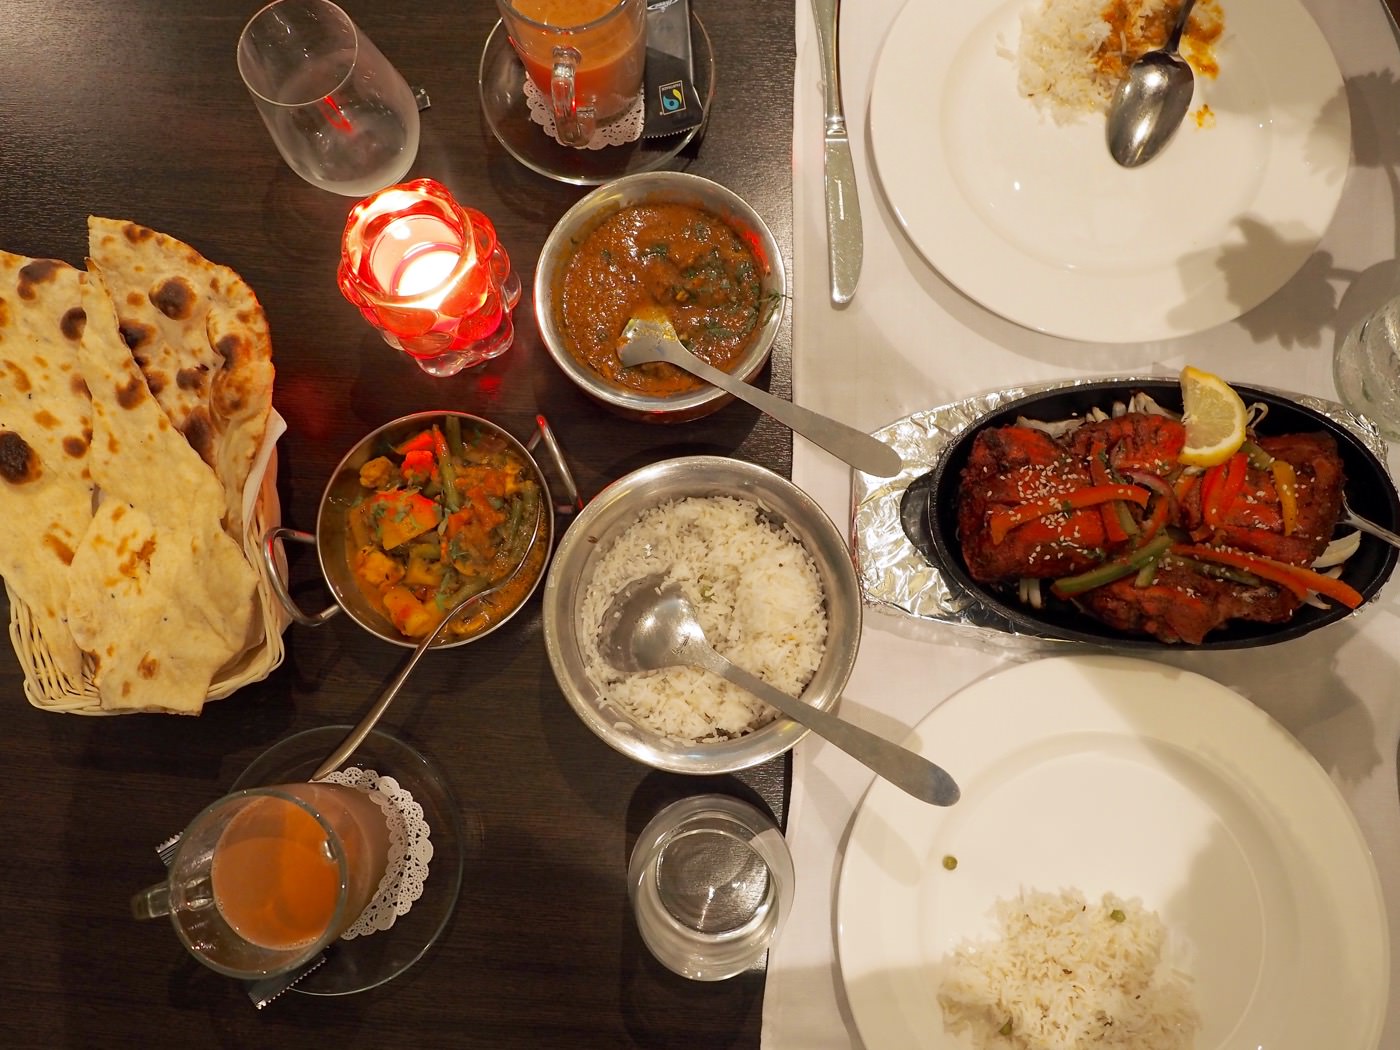 阿姆斯特丹美食 Ashoka 美味印度/尼泊爾料理 - 一口冒險 Bitesized Adventure